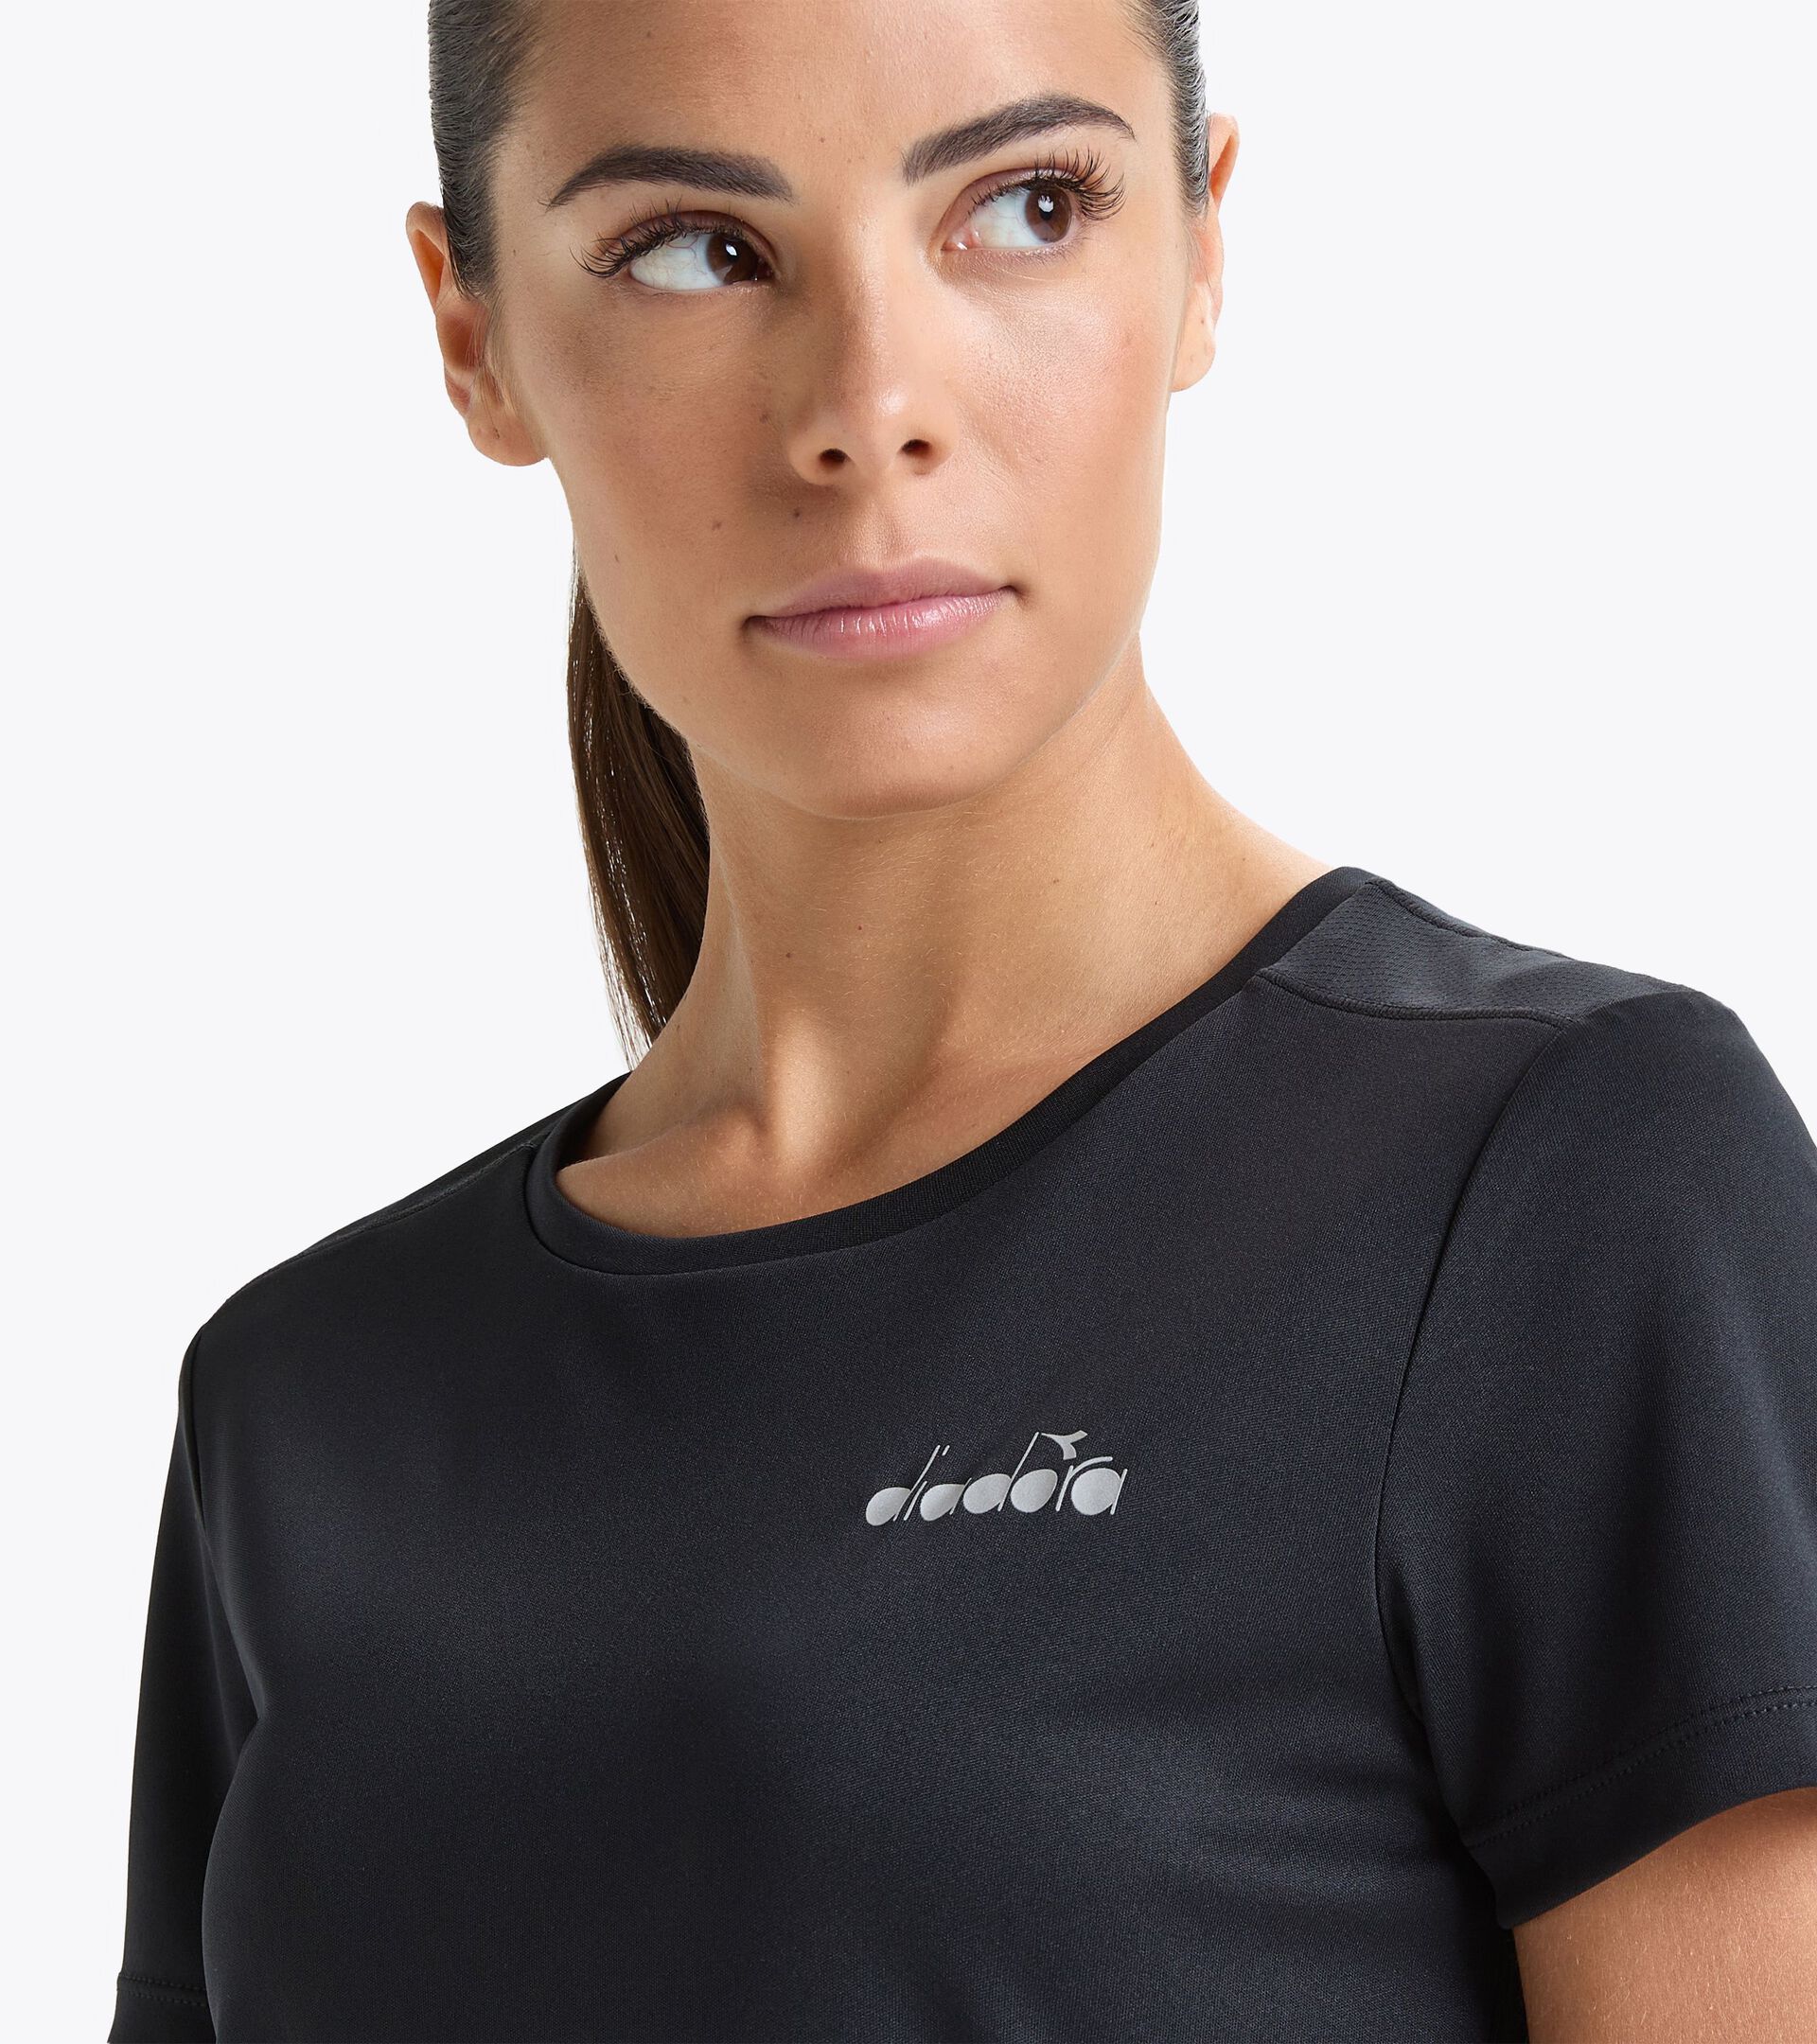 L. SS T-SHIRT RUN Running t-shirt - Women - Diadora Online Store GR